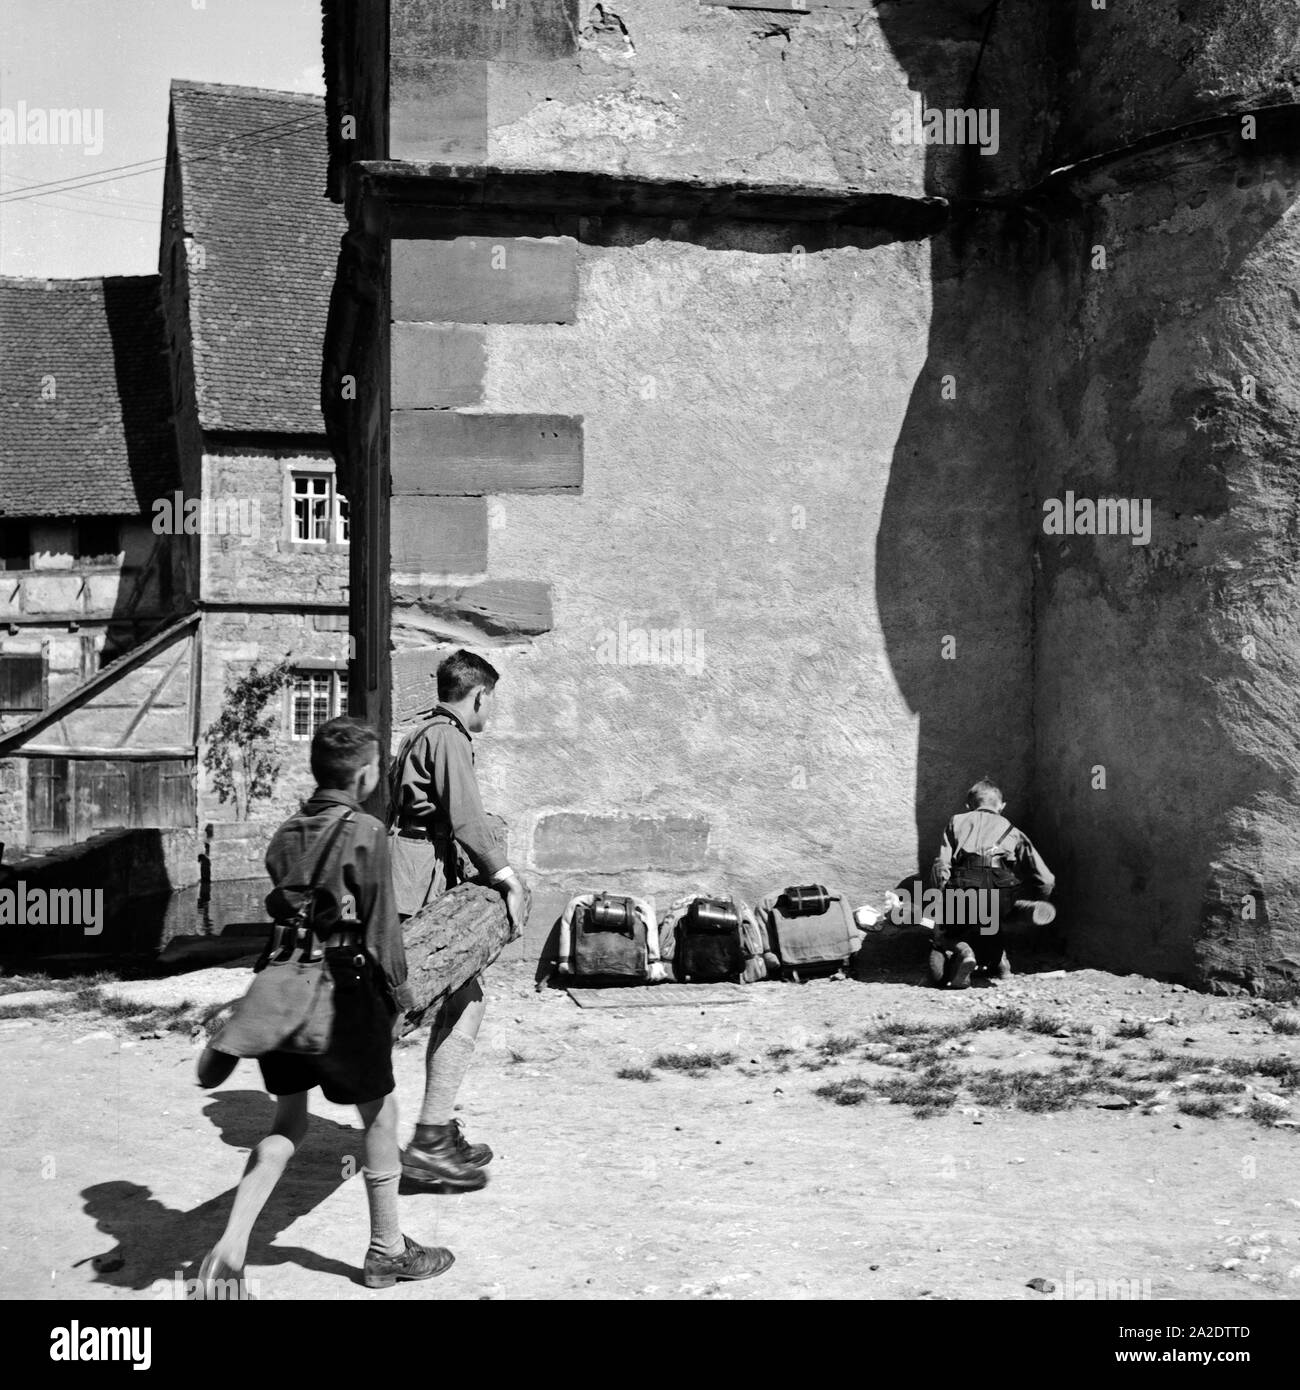 Drei Hitlerjungen in Rothenburg ob der Tauber, Deutschland 1930er Jahre. Three Hitler youths at Rothenburg ob der Tauber, Germany 1930s. Stock Photo